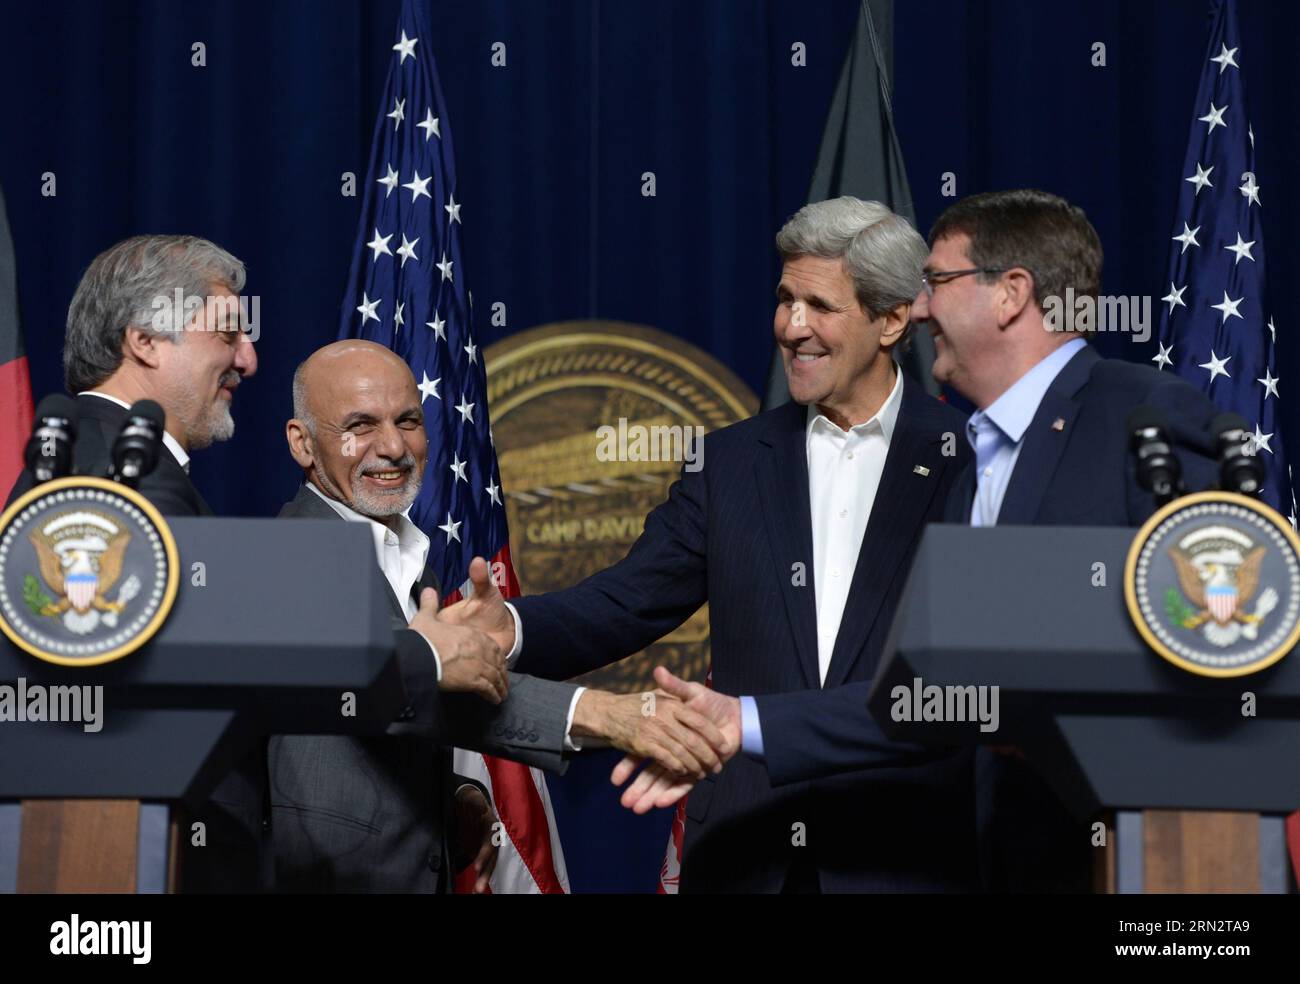 (150323) -- CAMP DAVID, mars. 23, 2015 -- (de R à L)US Le secrétaire à la Défense Ashton carter, le secrétaire d’État américain John Kerry, le président afghan Ashraf Ghani et le chef de l’exécutif afghan Abdullah Abdullah assistent à une conférence de presse à Camp David, Maryland, États-Unis, le 23 mars 2015. Le secrétaire américain à la Défense Ashton carter a déclaré lundi que l'administration Obama cherchait un financement pour s'assurer que les troupes afghanes sont maintenues à leur niveau de pointe cible jusqu'en 2017, comme un mouvement pour montrer l'engagement des États-Unis en faveur d'un partenariat stratégique avec l'Afghanistan. US-CAMP DAVID-PRÉSIDENT AFGHAN-VISITE YINXBOGU BLI Banque D'Images